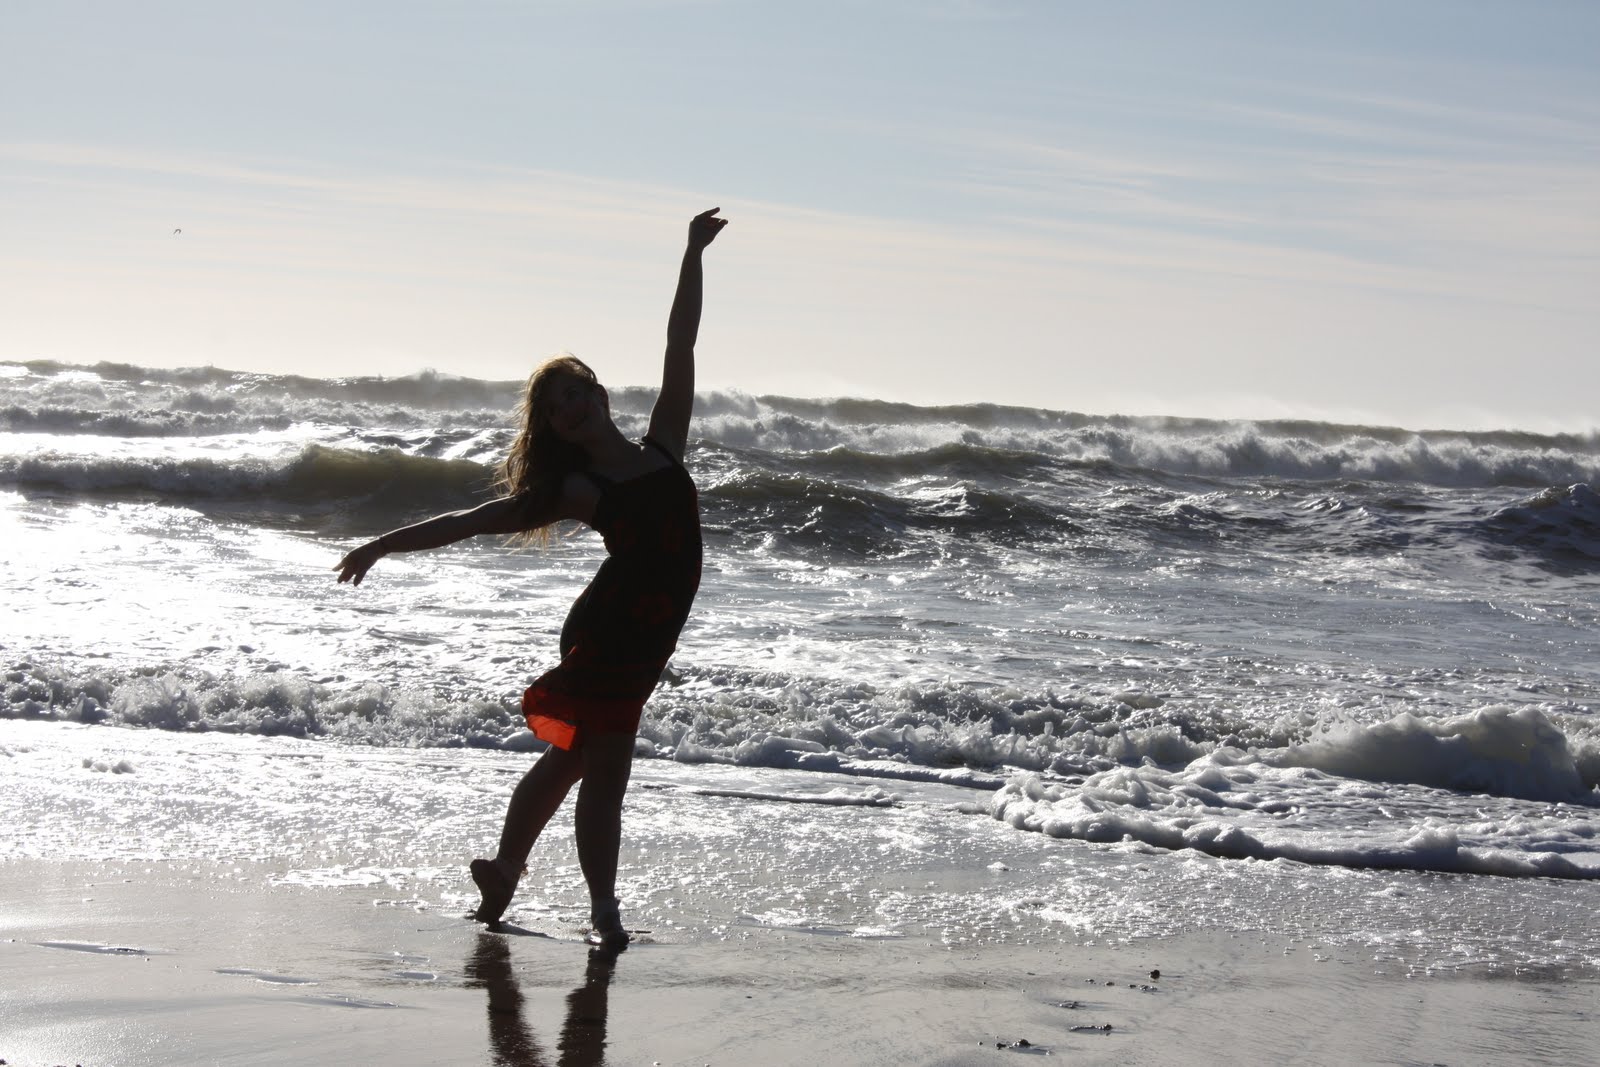 Ballet On Beach